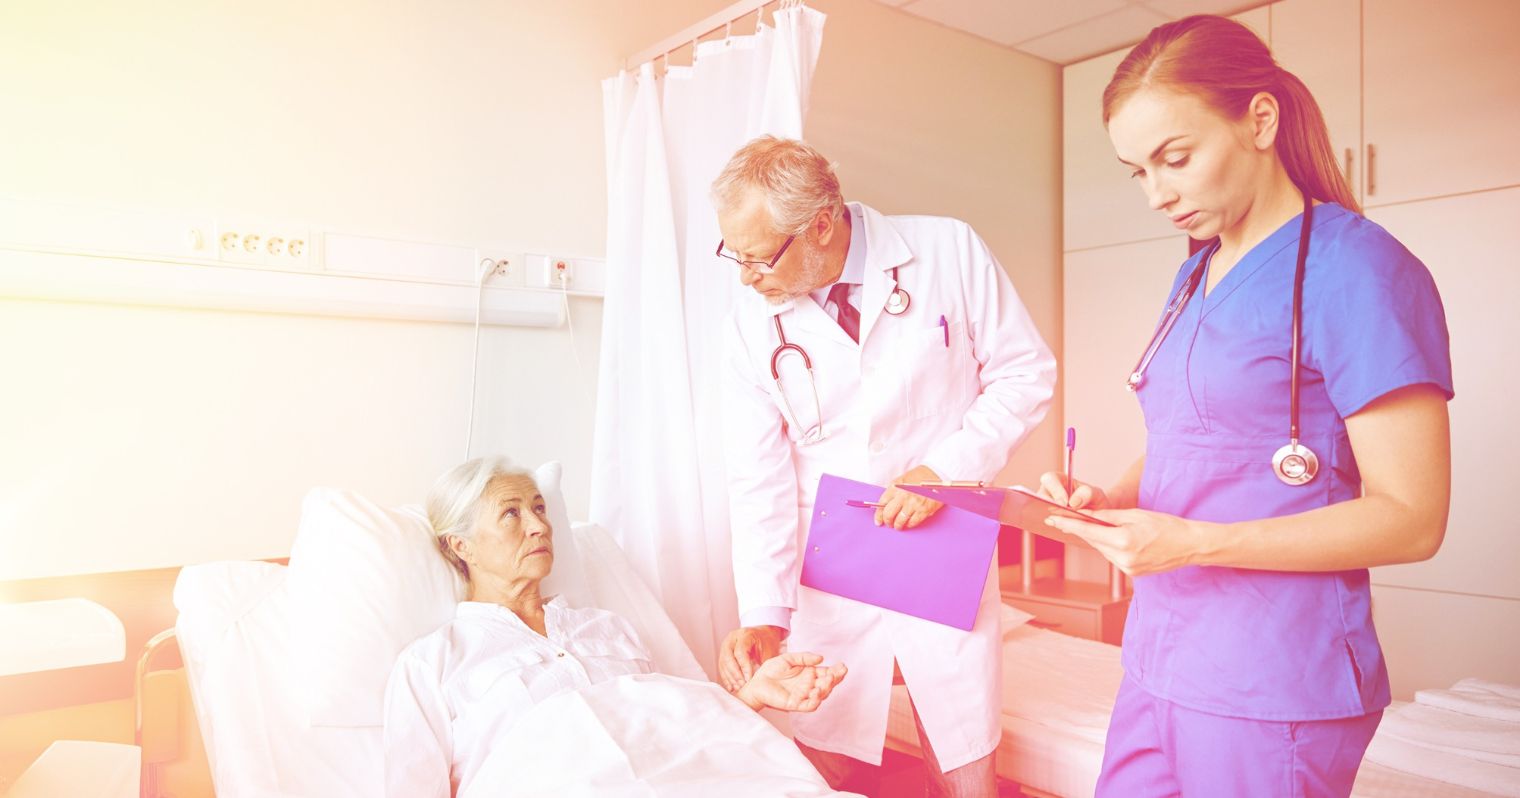 Idős beteg ágya mellett áll az orvos, mellette pedig egy nővér mappával a kezében jegyzetel.